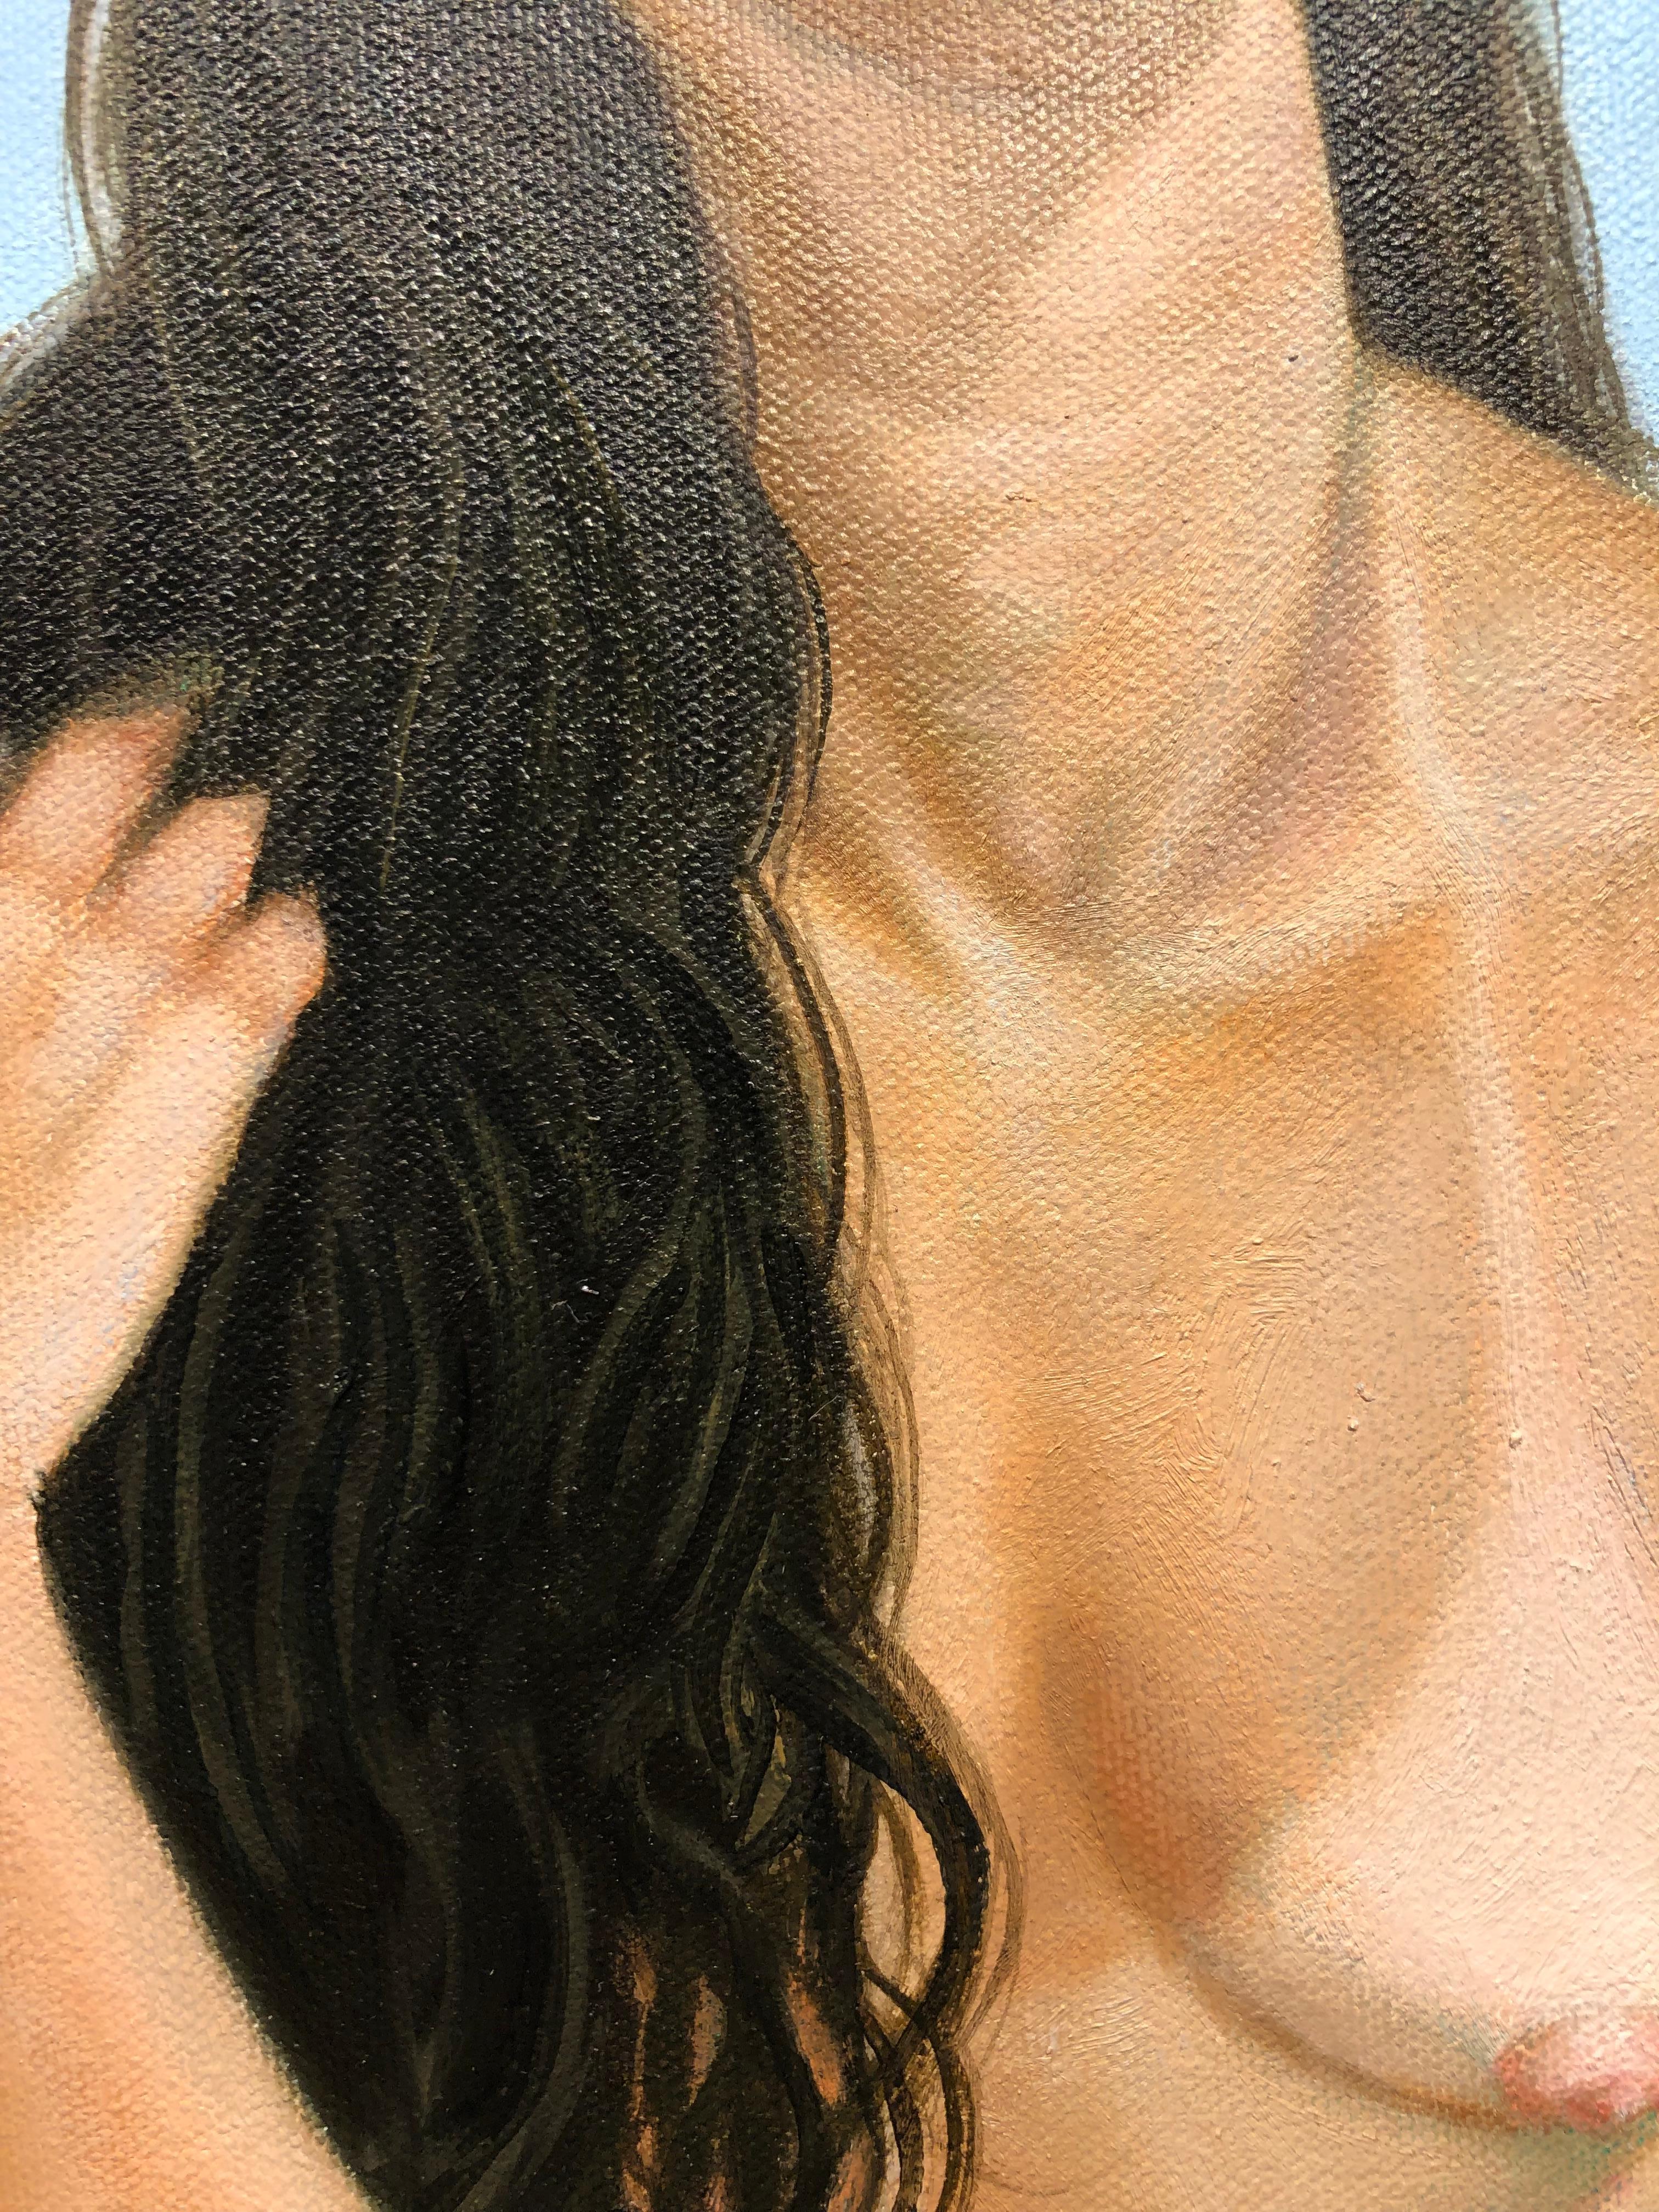 « Comfort Zone », figure féminine nue accrochée, regardant vers le haut, huile sur toile - Contemporain Painting par Juan Barragán